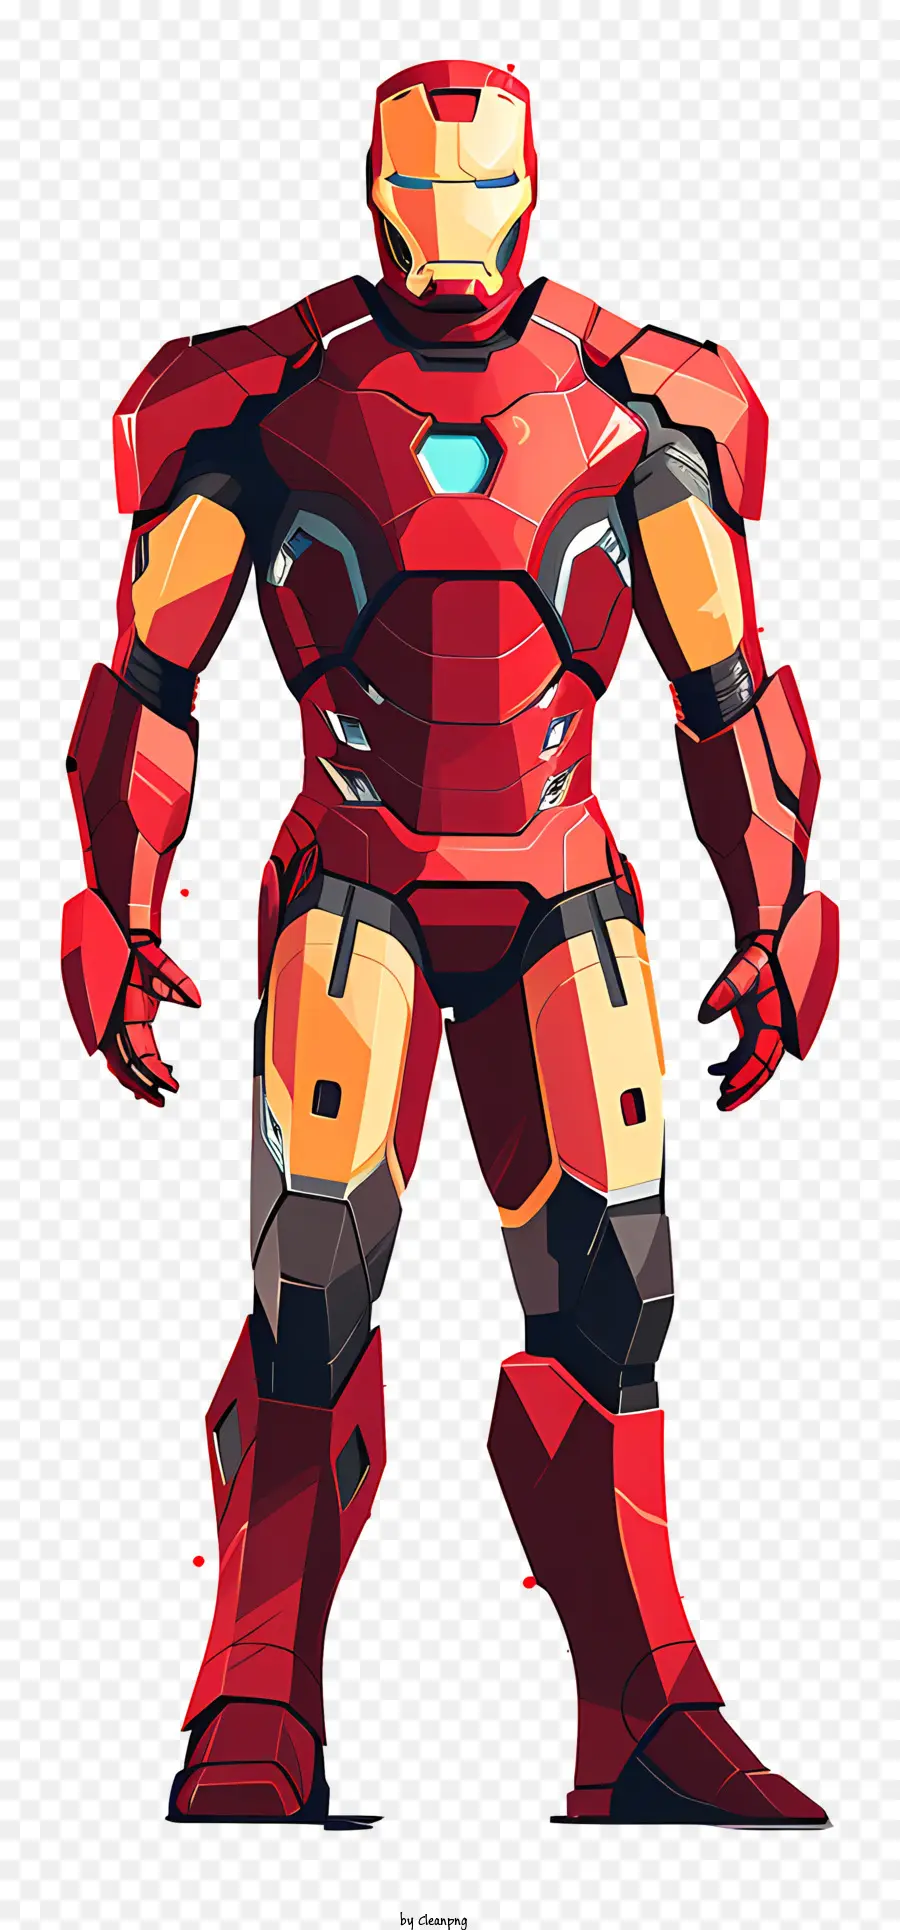 Iron Man - Bild von Iron Man im roten Anzug